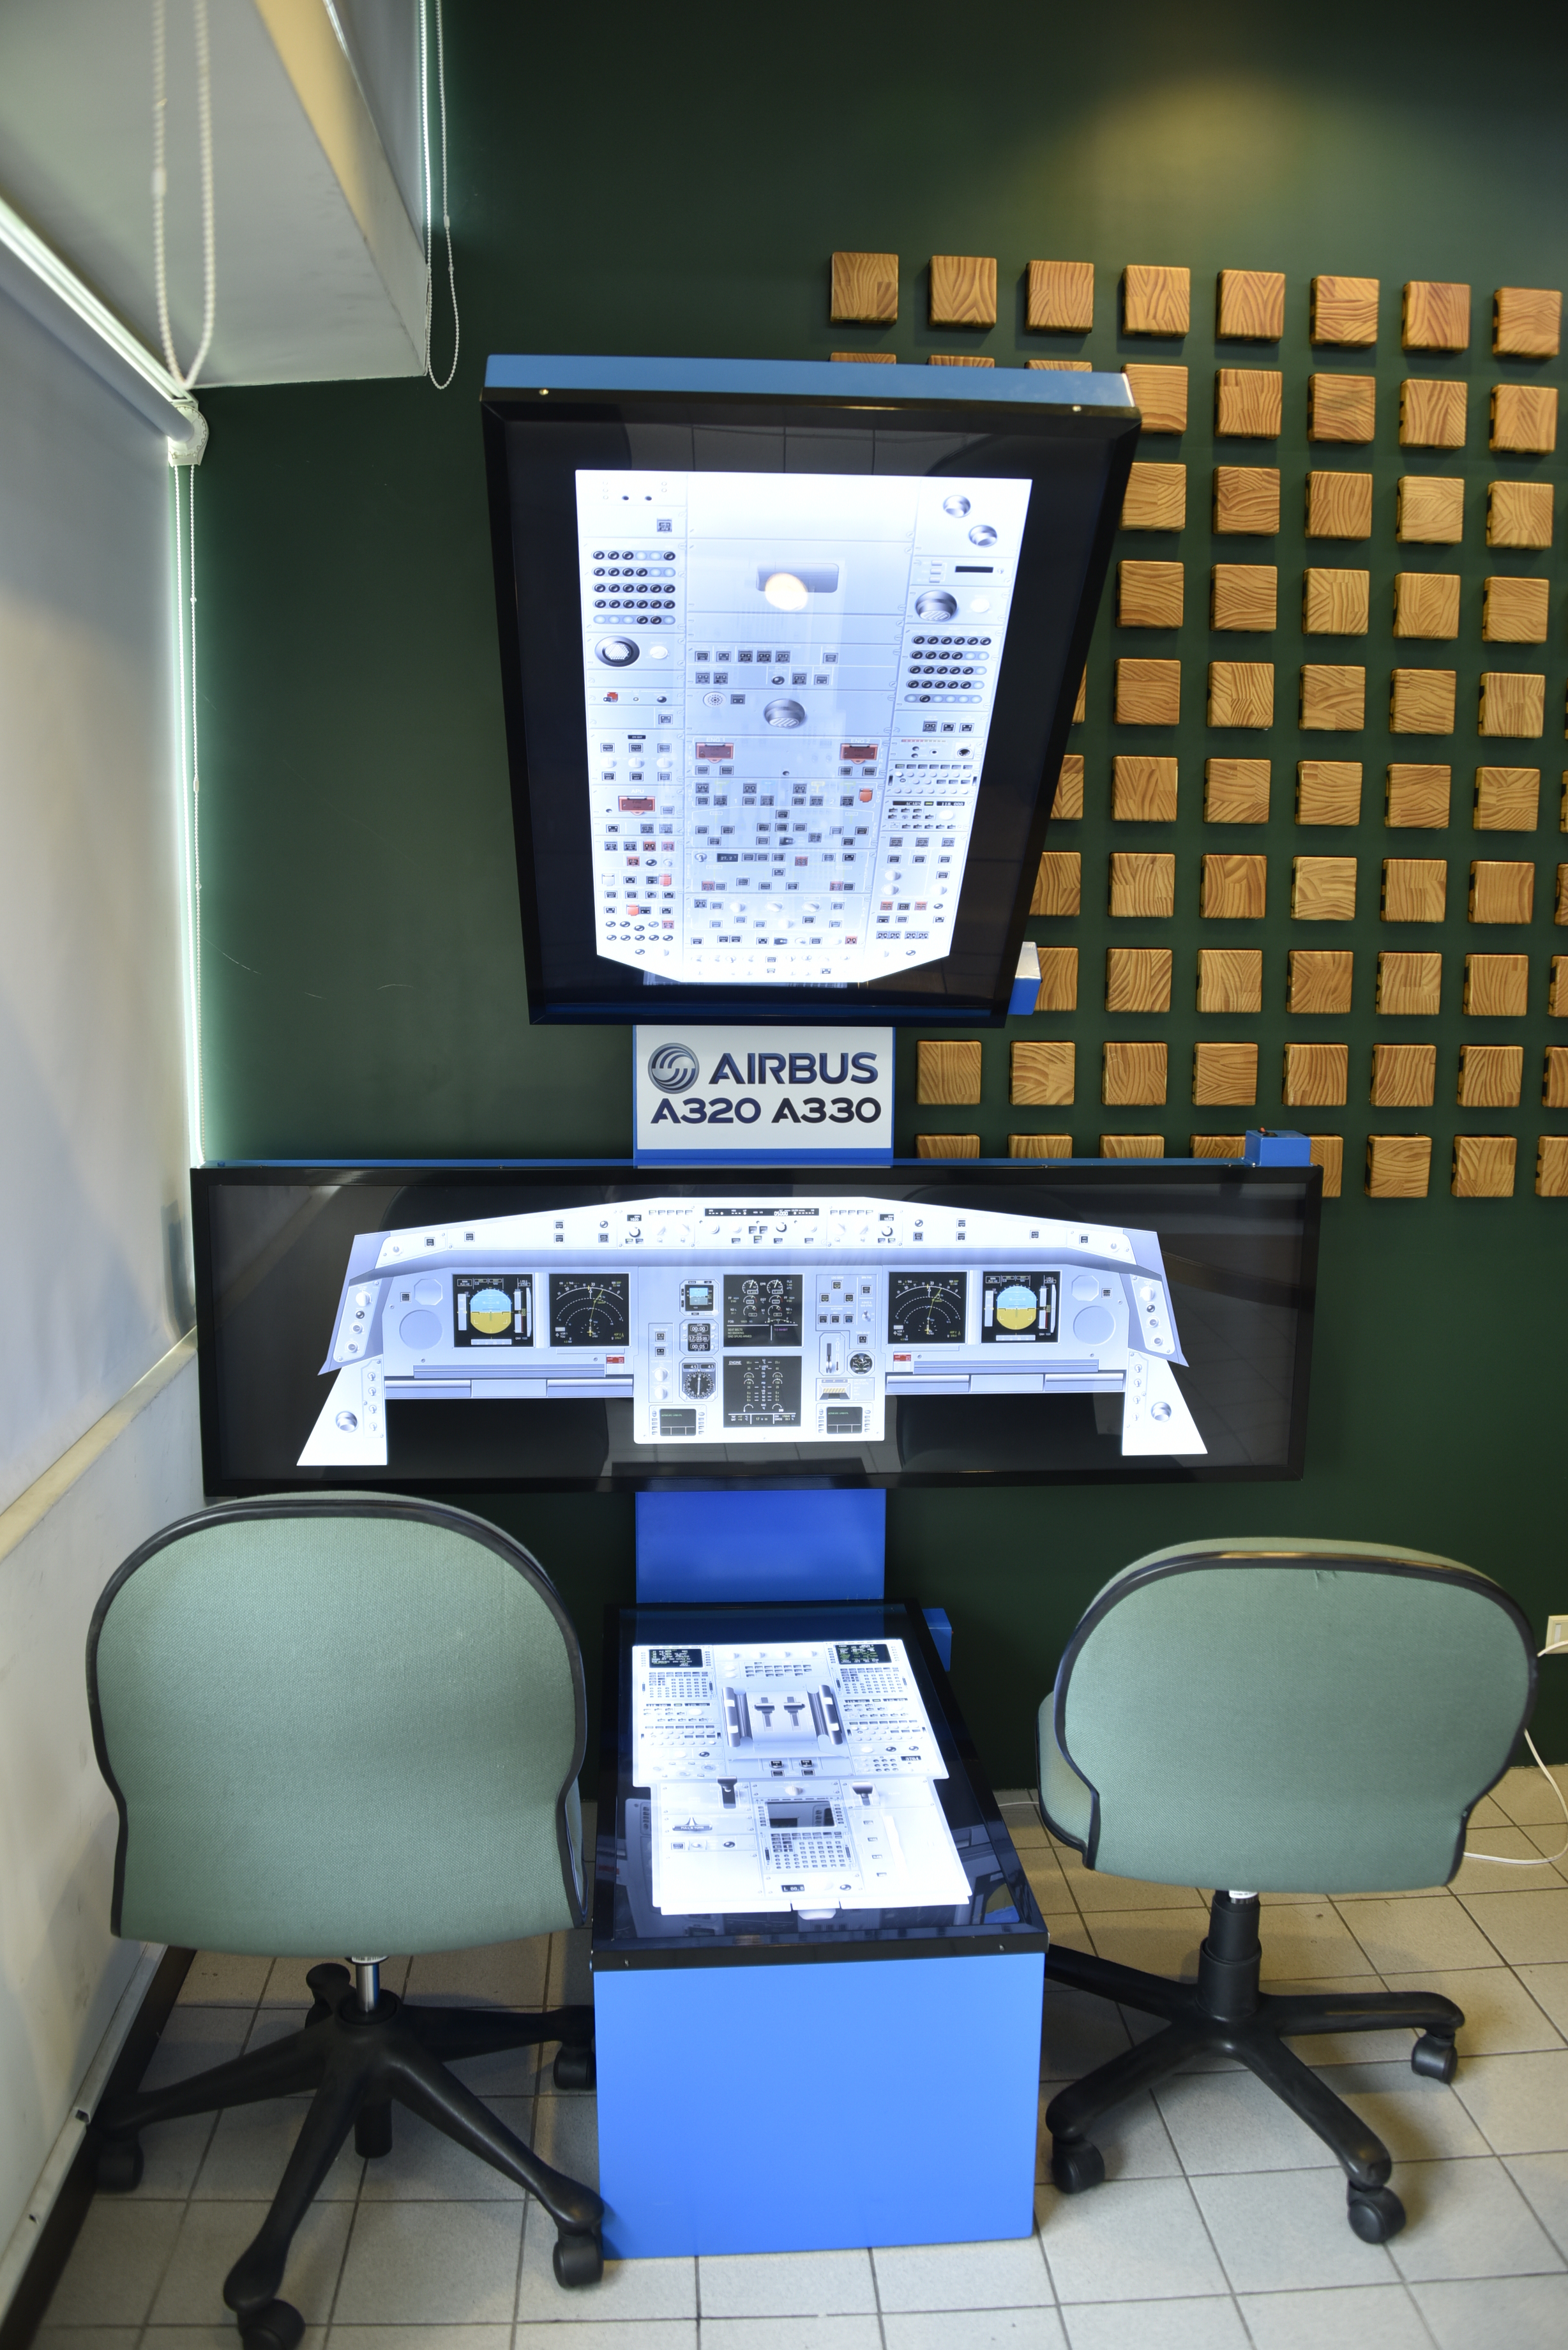 A320 330客機駕駛艙儀表模擬顯示教學燈箱-1